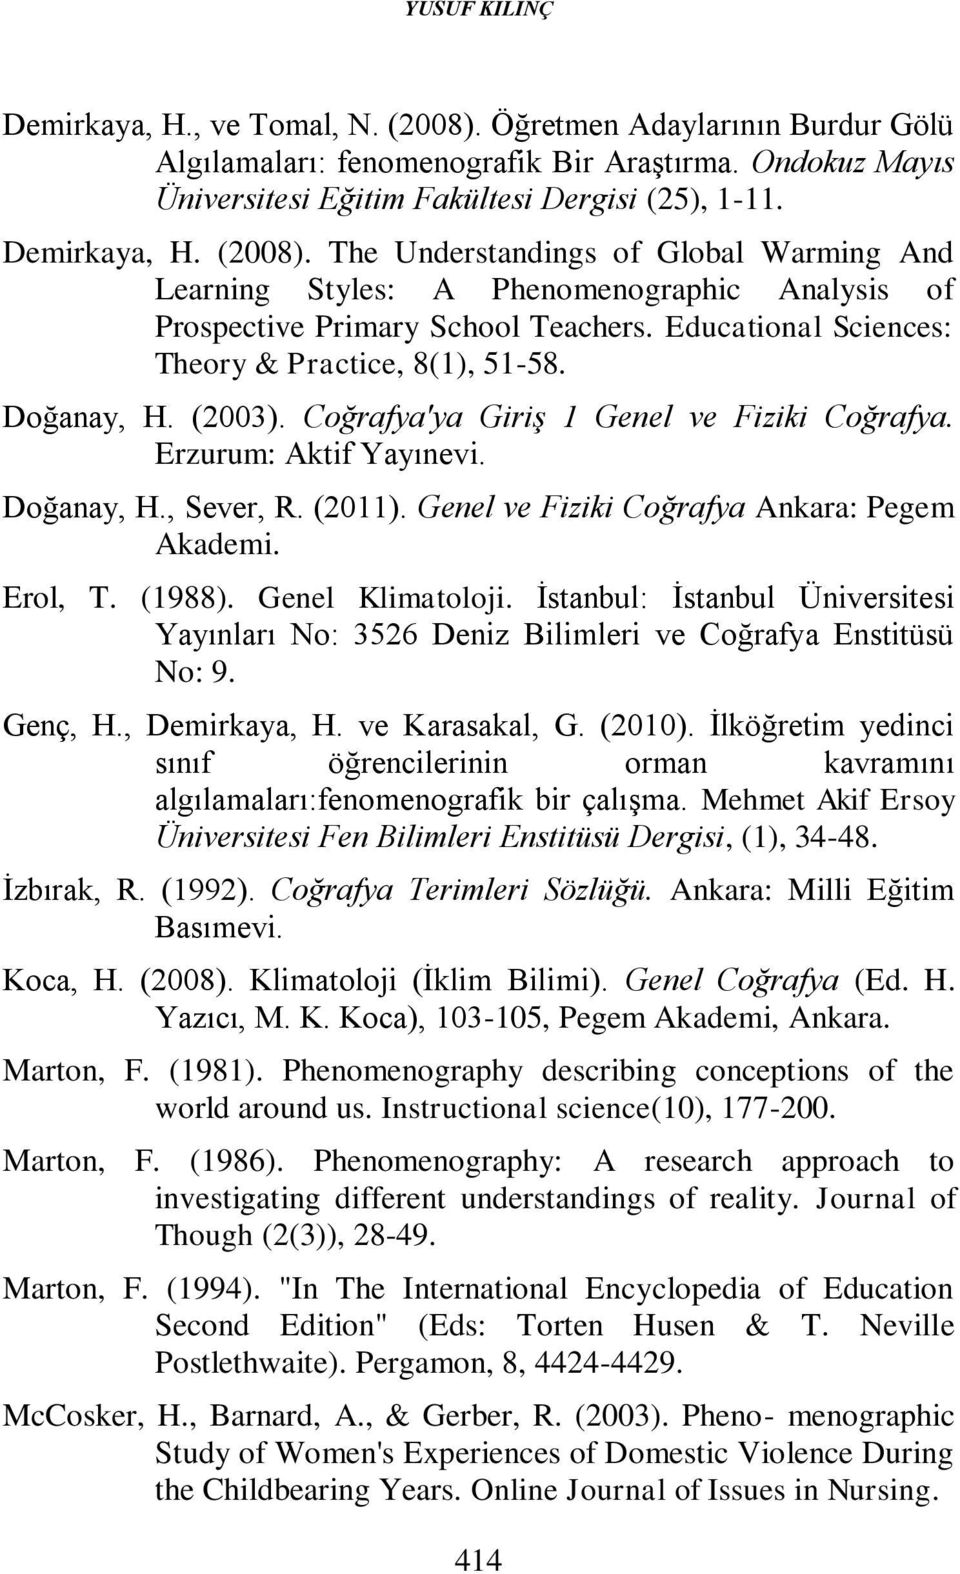 Educational Sciences: Theory & Practice, 8(1), 51-58. Doğanay, H. (2003). Coğrafya'ya Giriş 1 Genel ve Fiziki Coğrafya. Erzurum: Aktif Yayınevi. Doğanay, H., Sever, R. (2011).